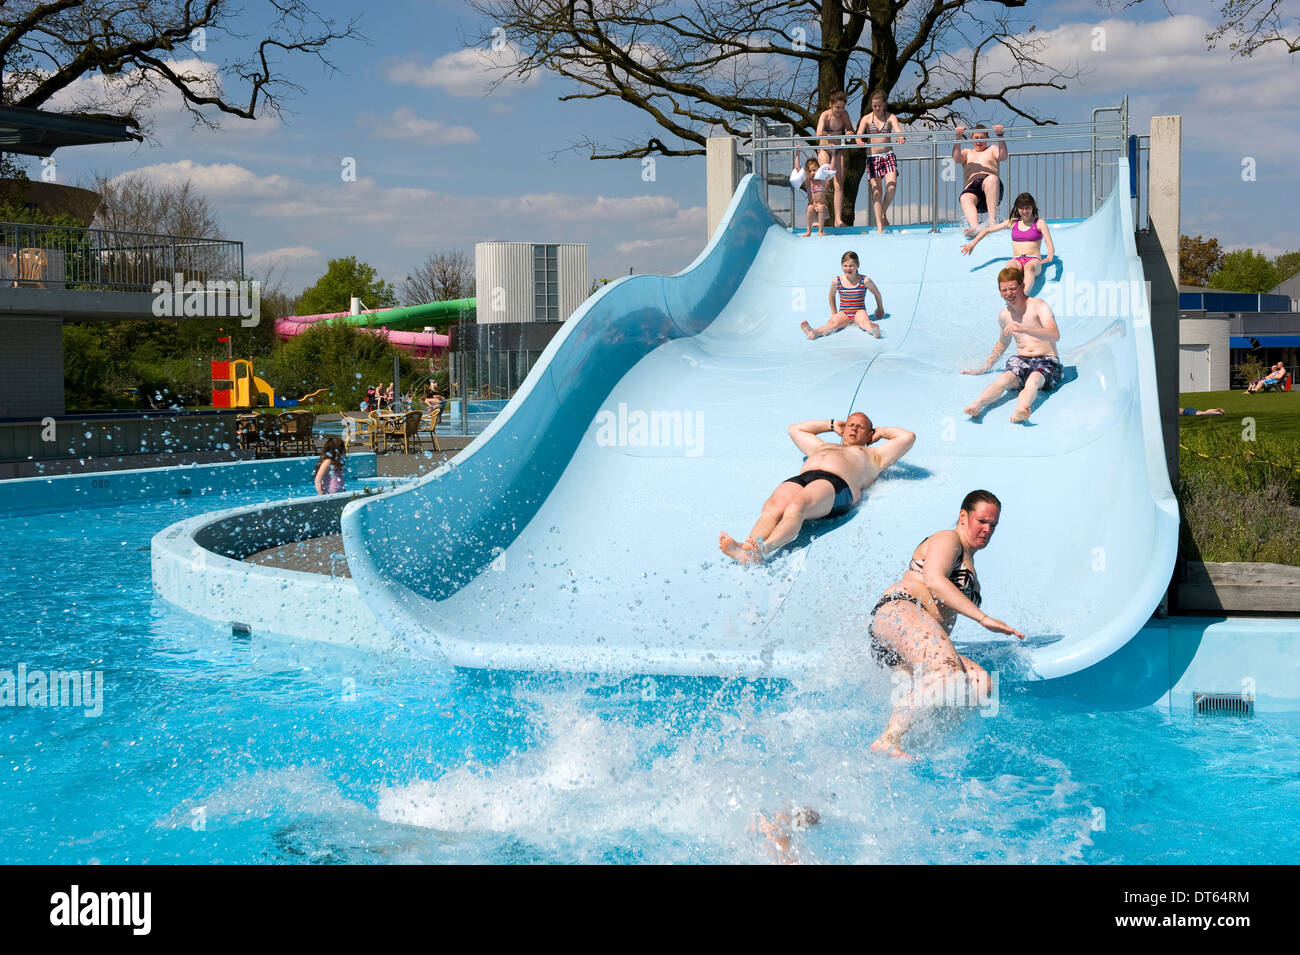 La gente se desliza sobre un tobogán de agua de una piscina pública Foto de stock